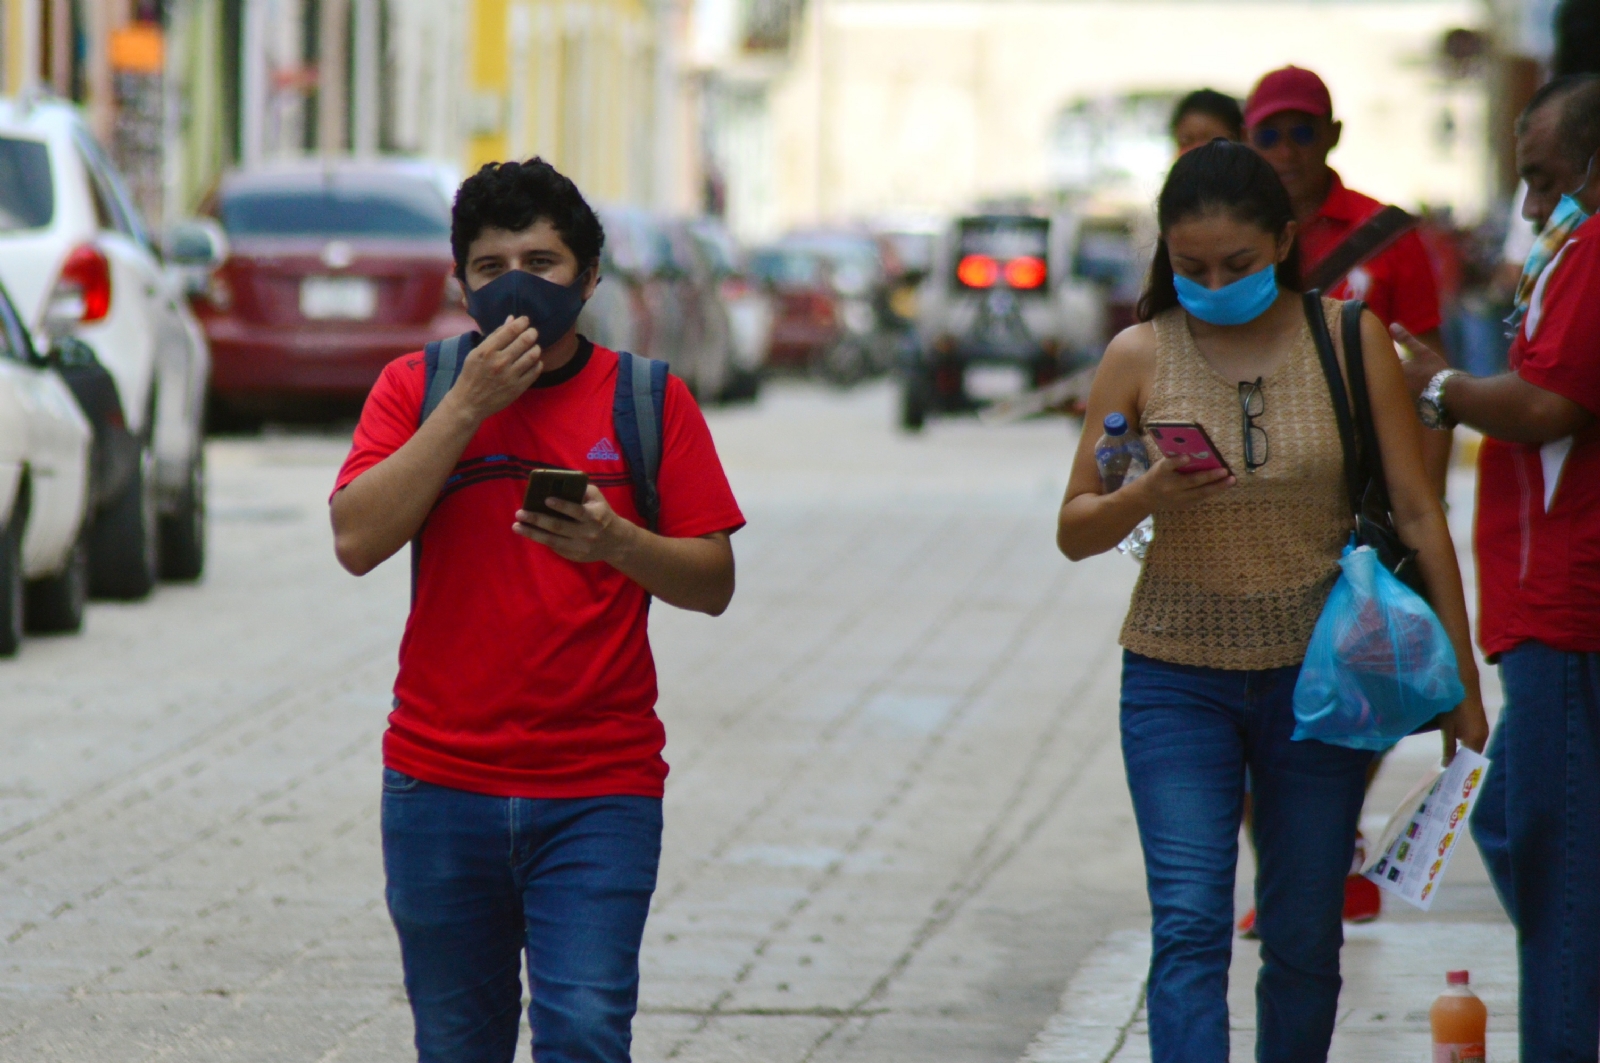 Iglesia de Campeche reprueba que jóvenes se vistan 'como quieran' en las escuelas